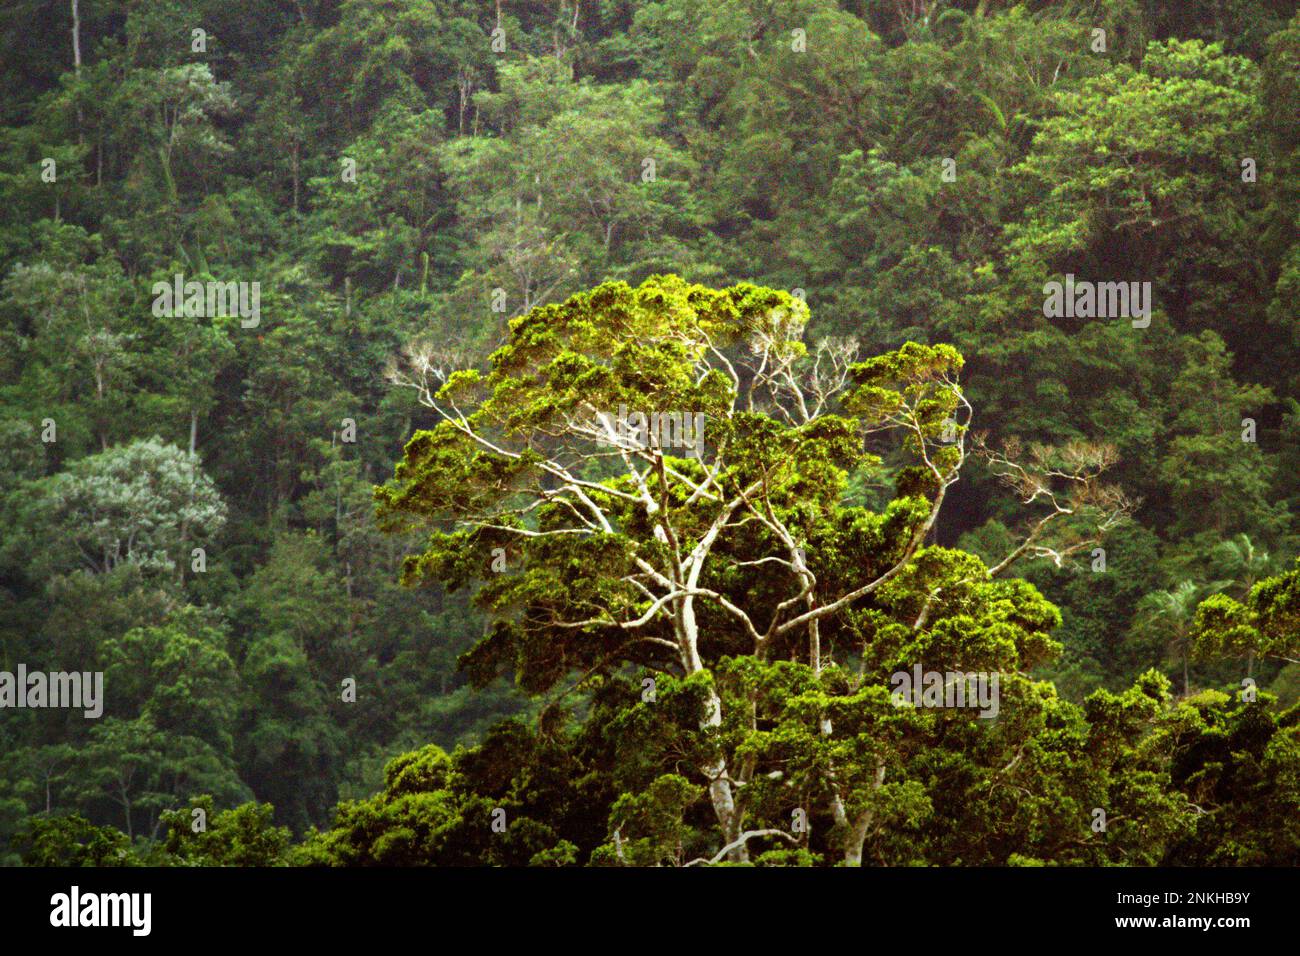 Bosque tropical al pie del Monte Duasudara en Sulawesi del Norte, Indonesia. Los bosques de la tierra, actualmente alrededor de 4 mil millones de hectáreas en total, siguen siendo un sumidero neto de dióxido de carbono, que colectivamente emiten 8,1 mil millones de toneladas métricas de carbono cada año y absorben 16 mil millones de toneladas métricas, según Jennifer Fergesen en su artículo publicado a tiempo el 18 de octubre de 2022. Las selvas tropicales del sudeste asiático son uno de los tres sistemas más grandes del mundo que son los pulmones de la tierra, junto con el Amazonas y la cuenca del río Congo. Foto de stock